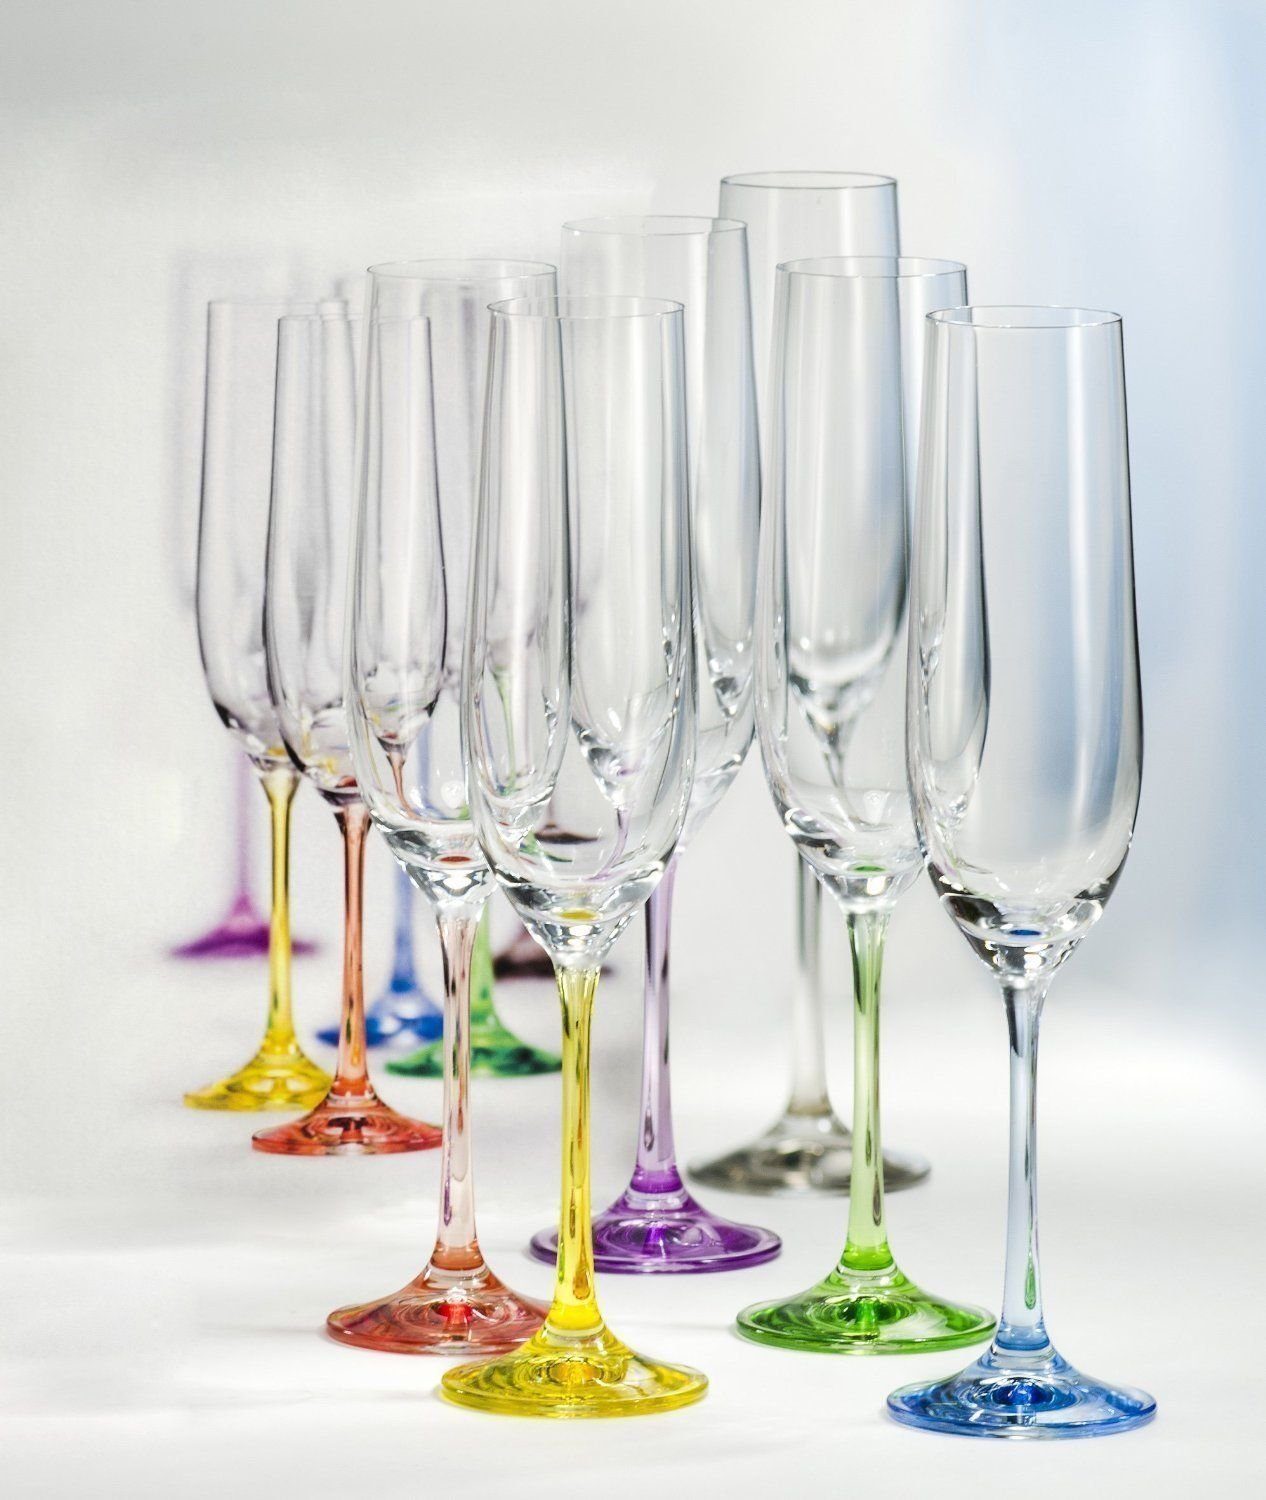 Crystalex Sektglas Sektgläser Rainbow Sektglas 190 ml, Kristallglas, 6- teilig, farbig, Kristallglas, lila, grün, blau, gelb, grau, rot